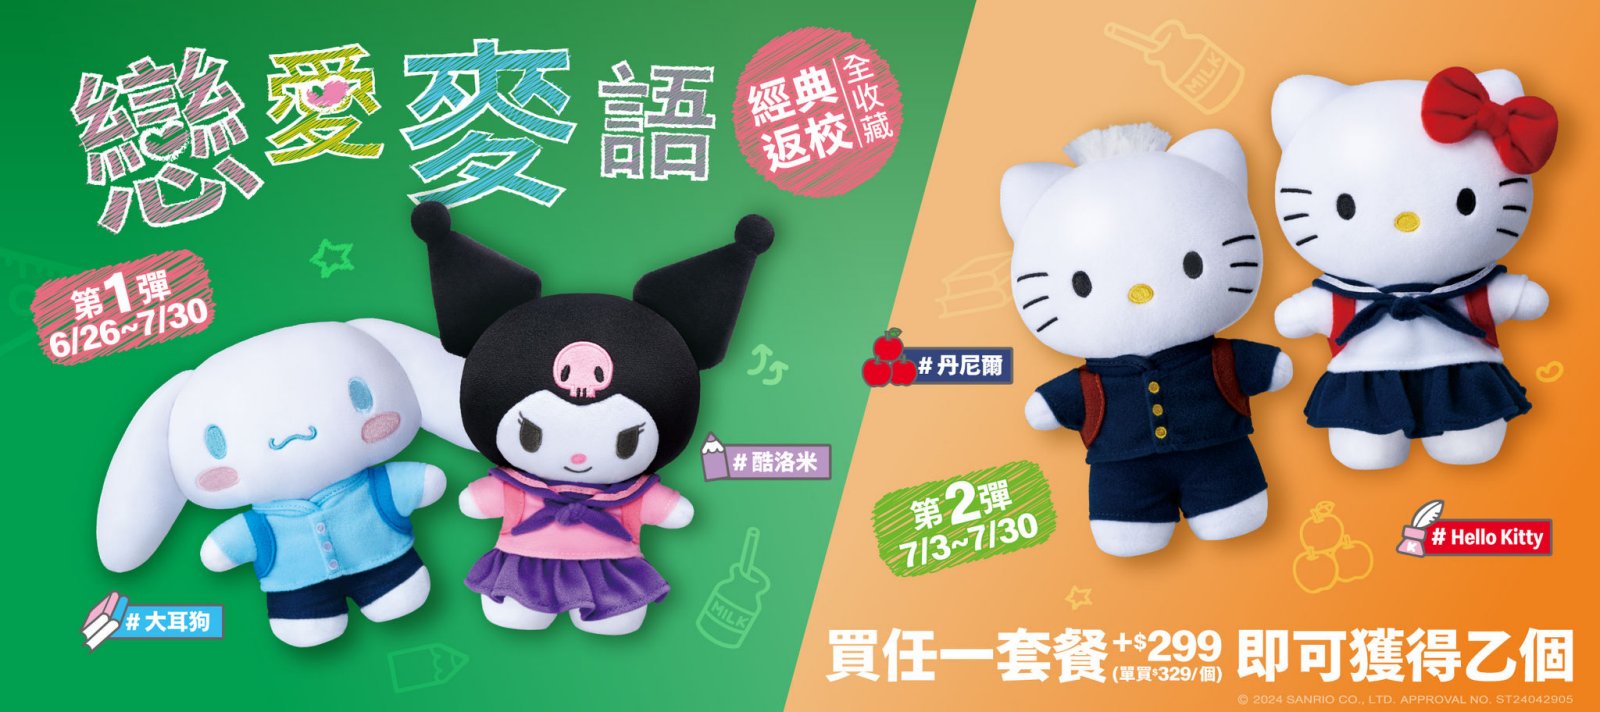 台灣麥當勞與三麗鷗合作將於 6 月 26 日推出「戀愛麥語」期間限定娃娃活動 - 電腦王阿達